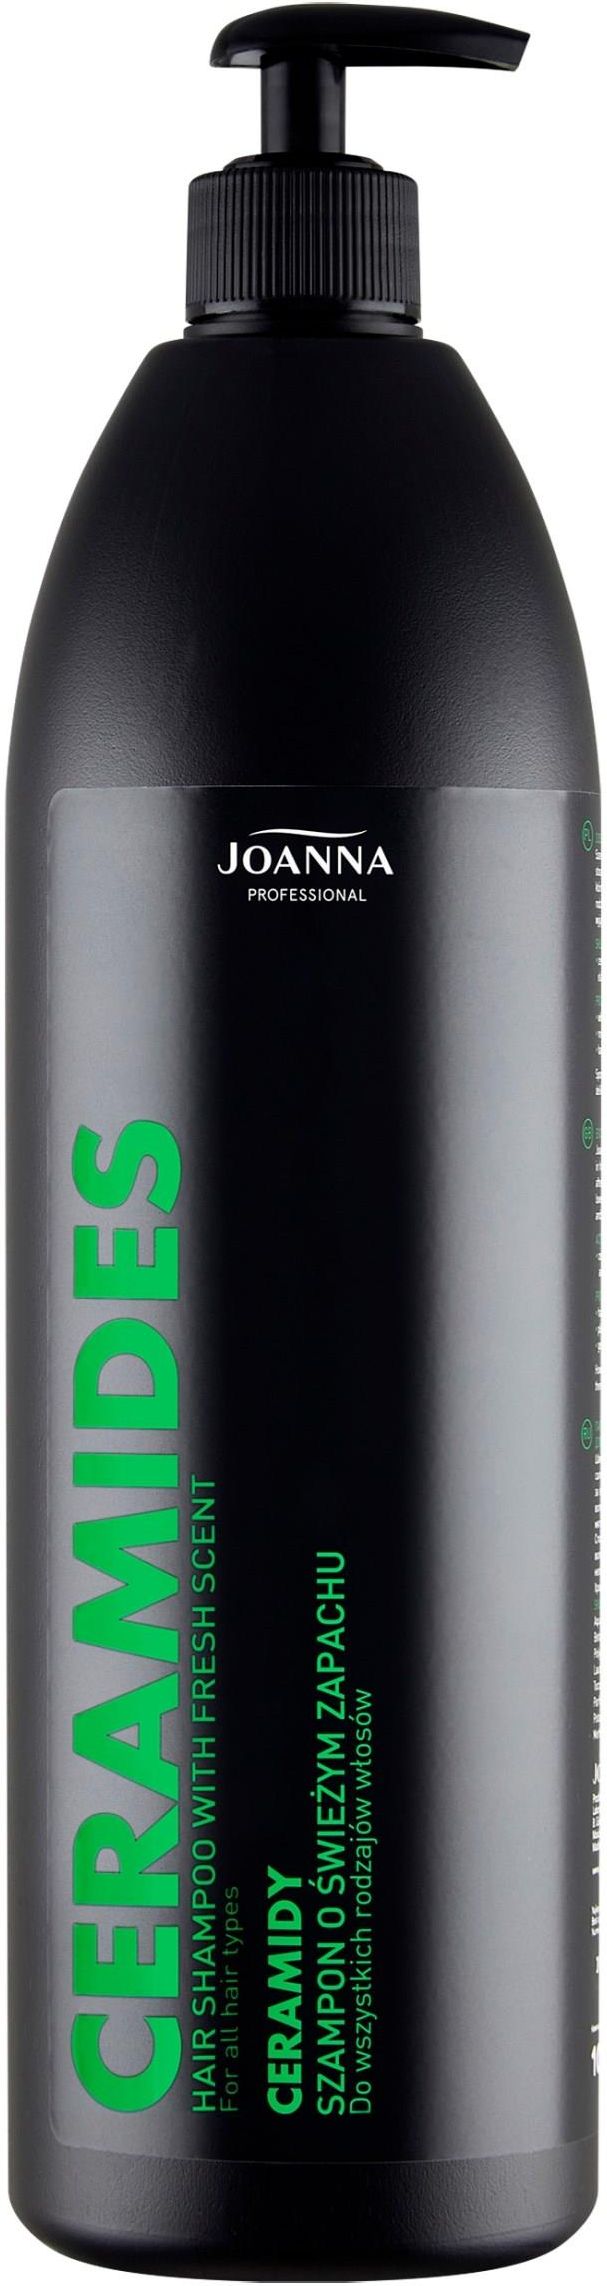 joanna professional szampon do włosów farbowanych 1000ml ceneo